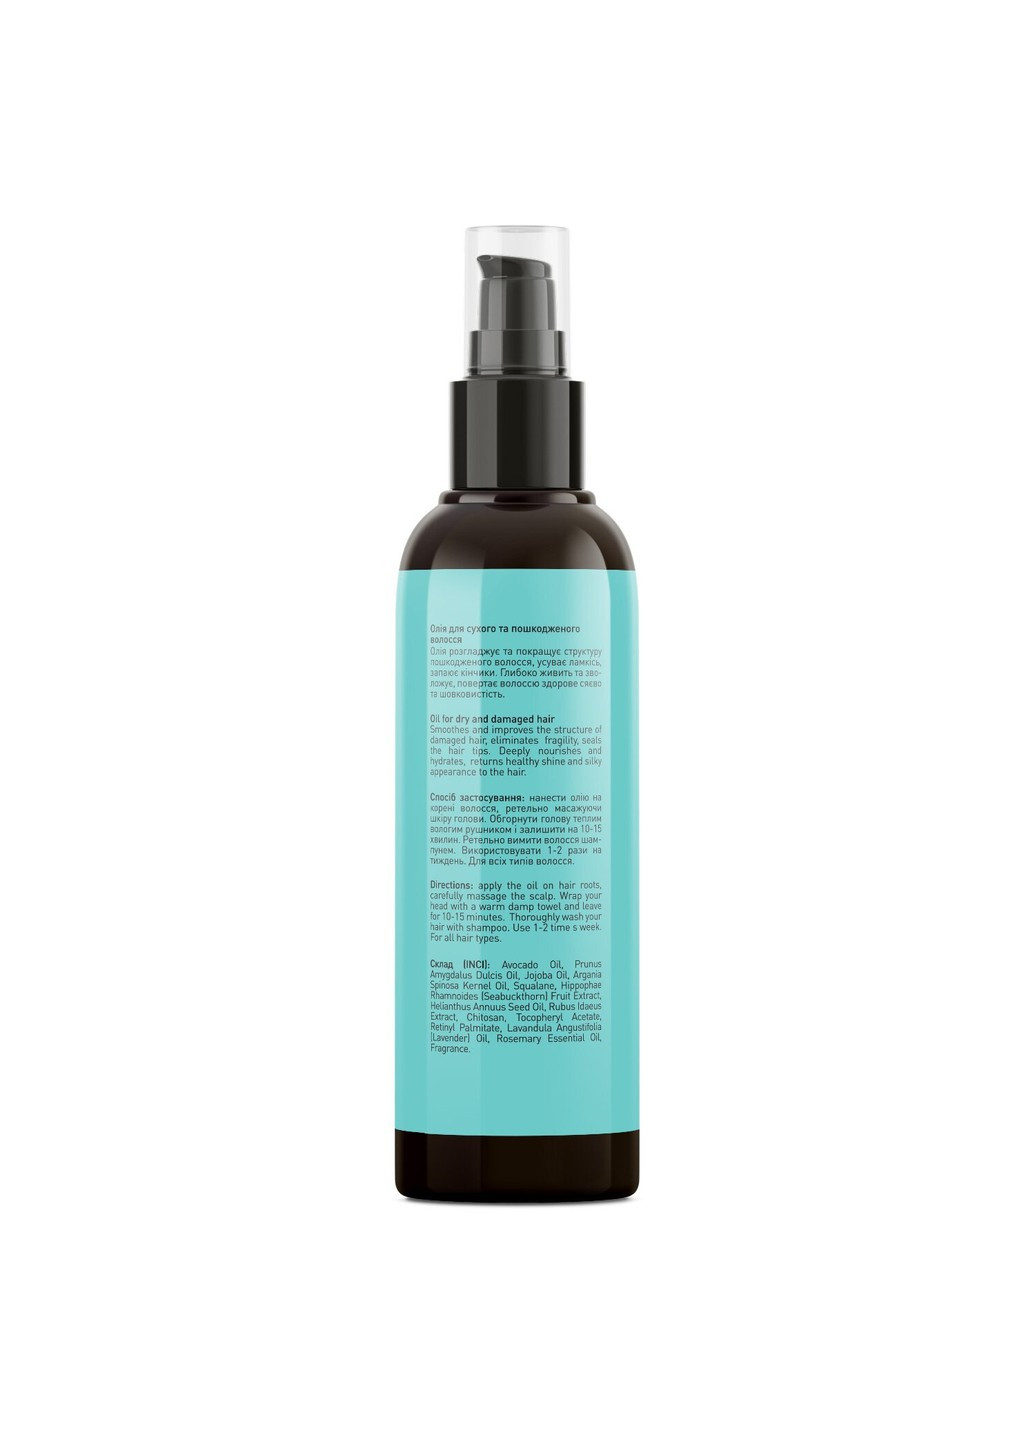 Олія для сухого і пошкодженого волосся Hair Reviver Oil 100 мл Joko Blend (255361764)